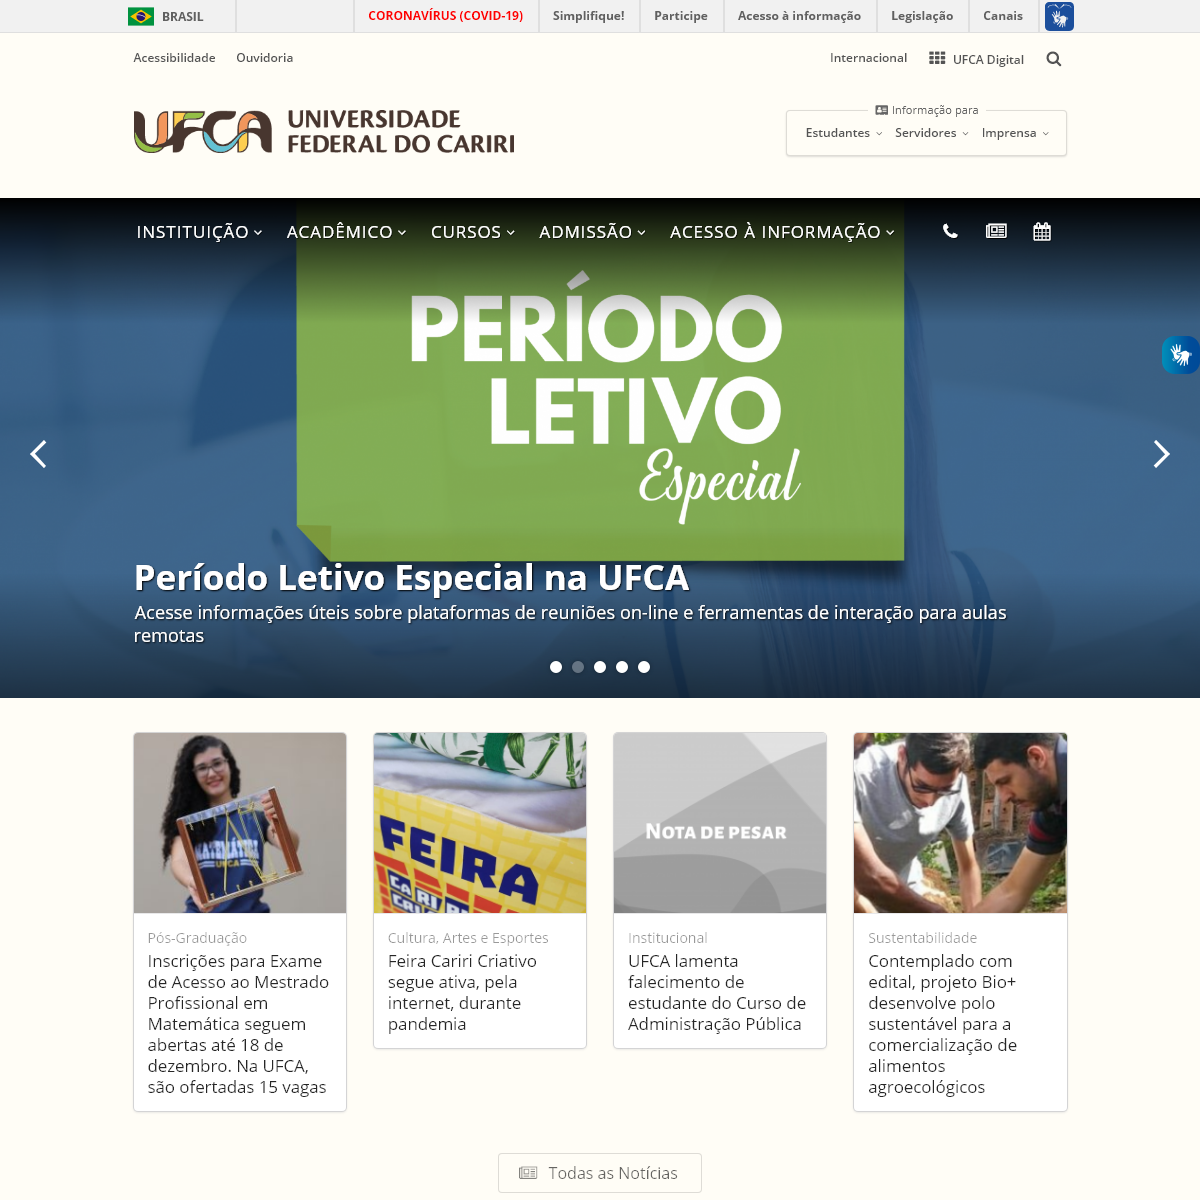 A complete backup of ufca.edu.br